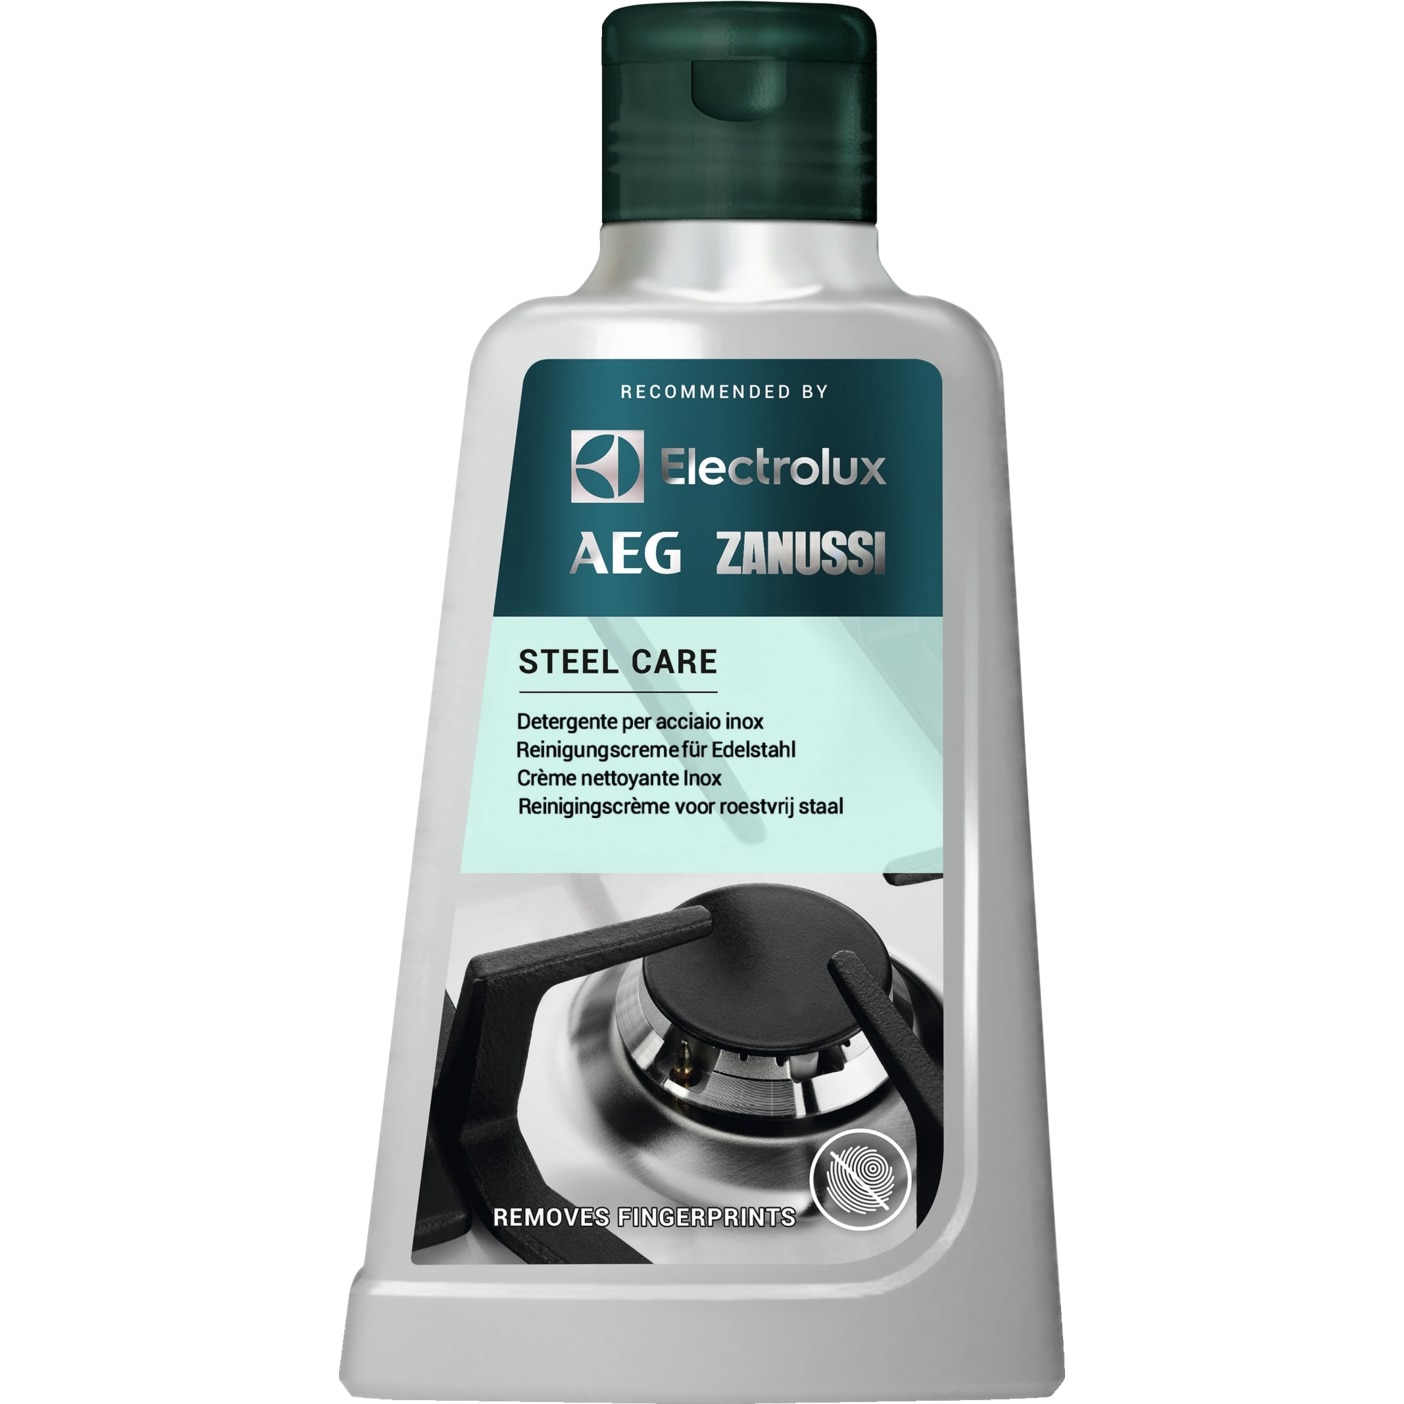 Detergente per acciaio inox Steel Care Electrolux 300ML